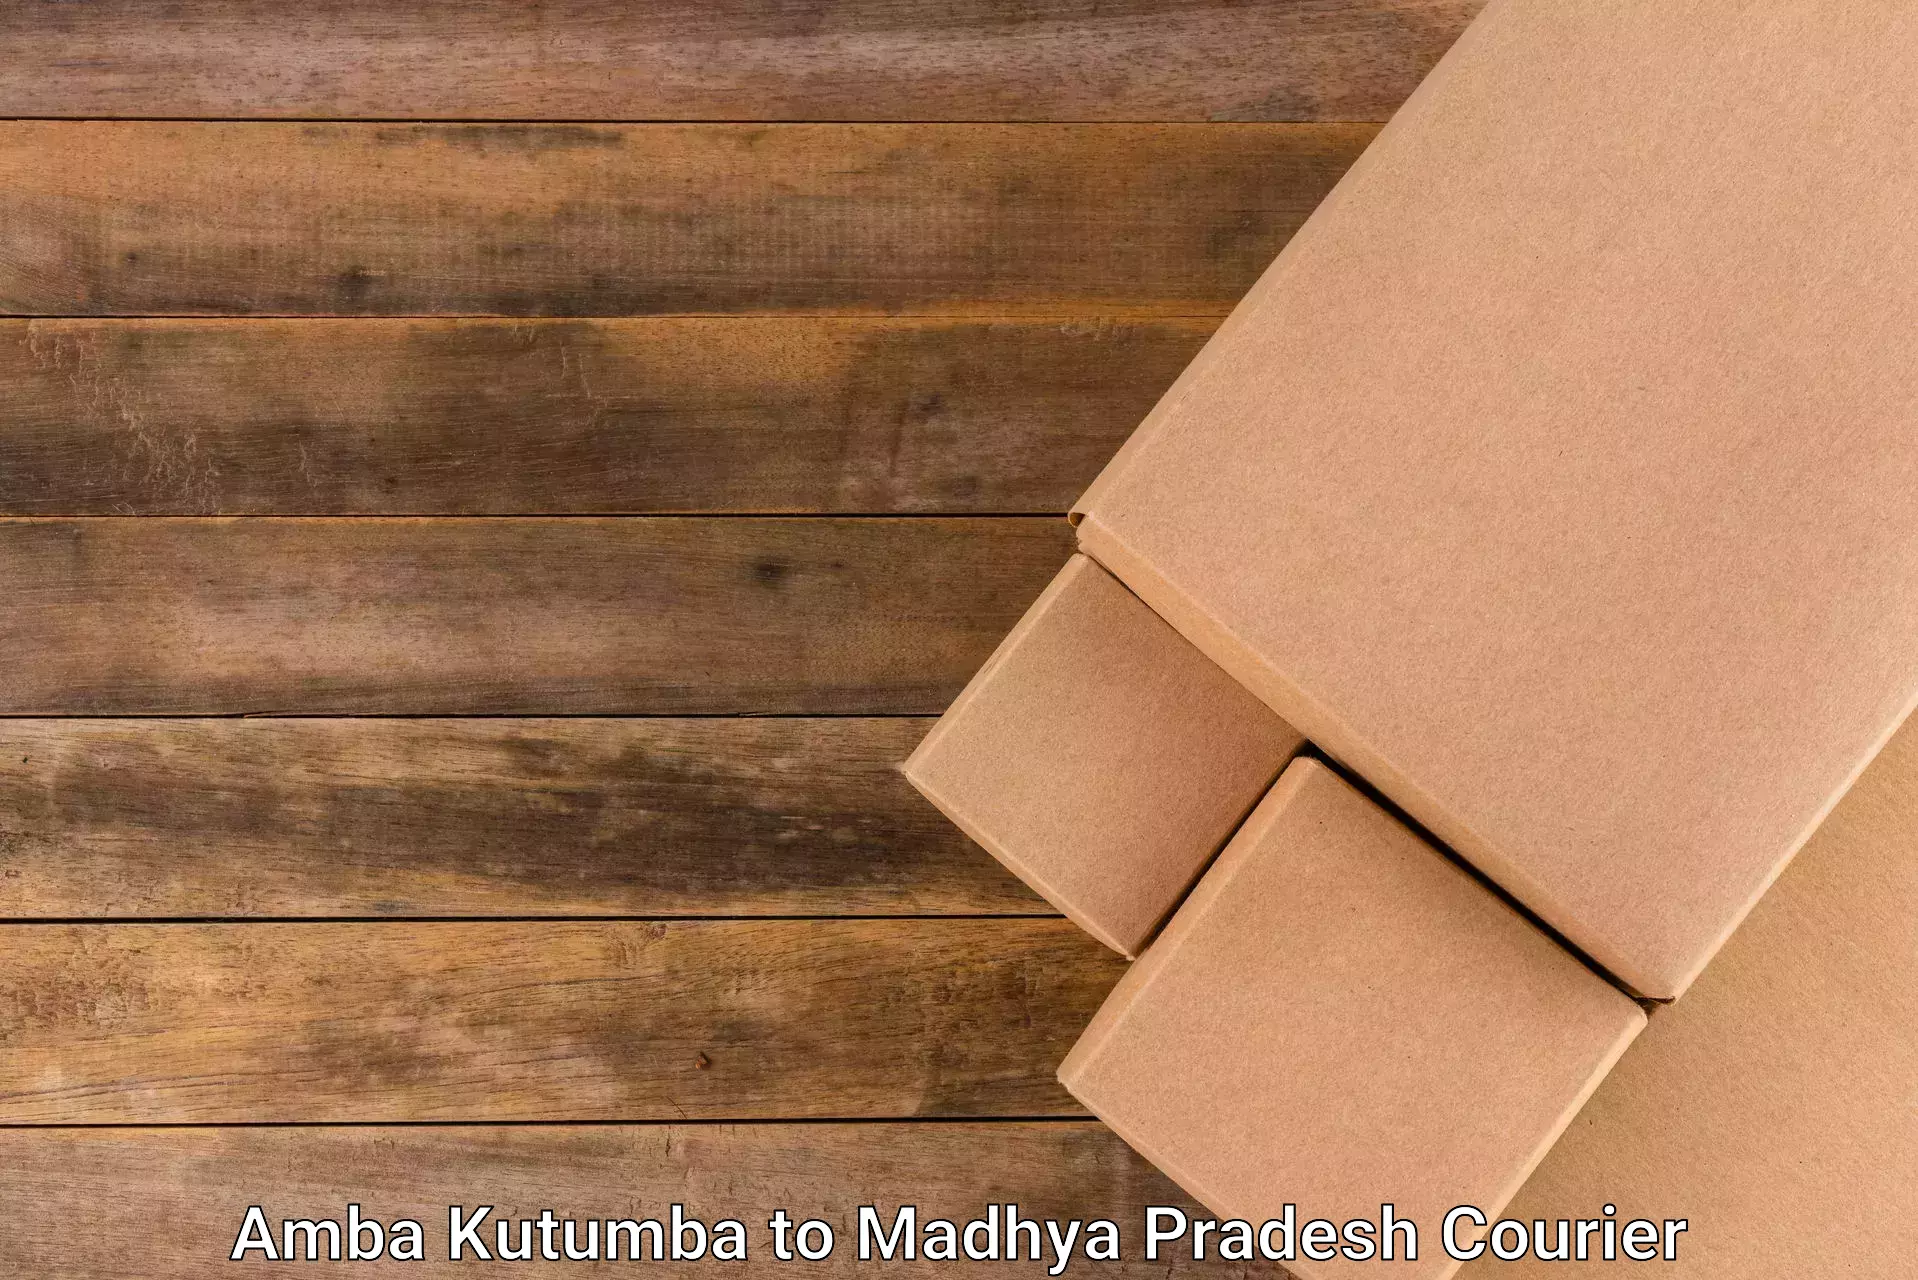 Efficient parcel service Amba Kutumba to Nagod